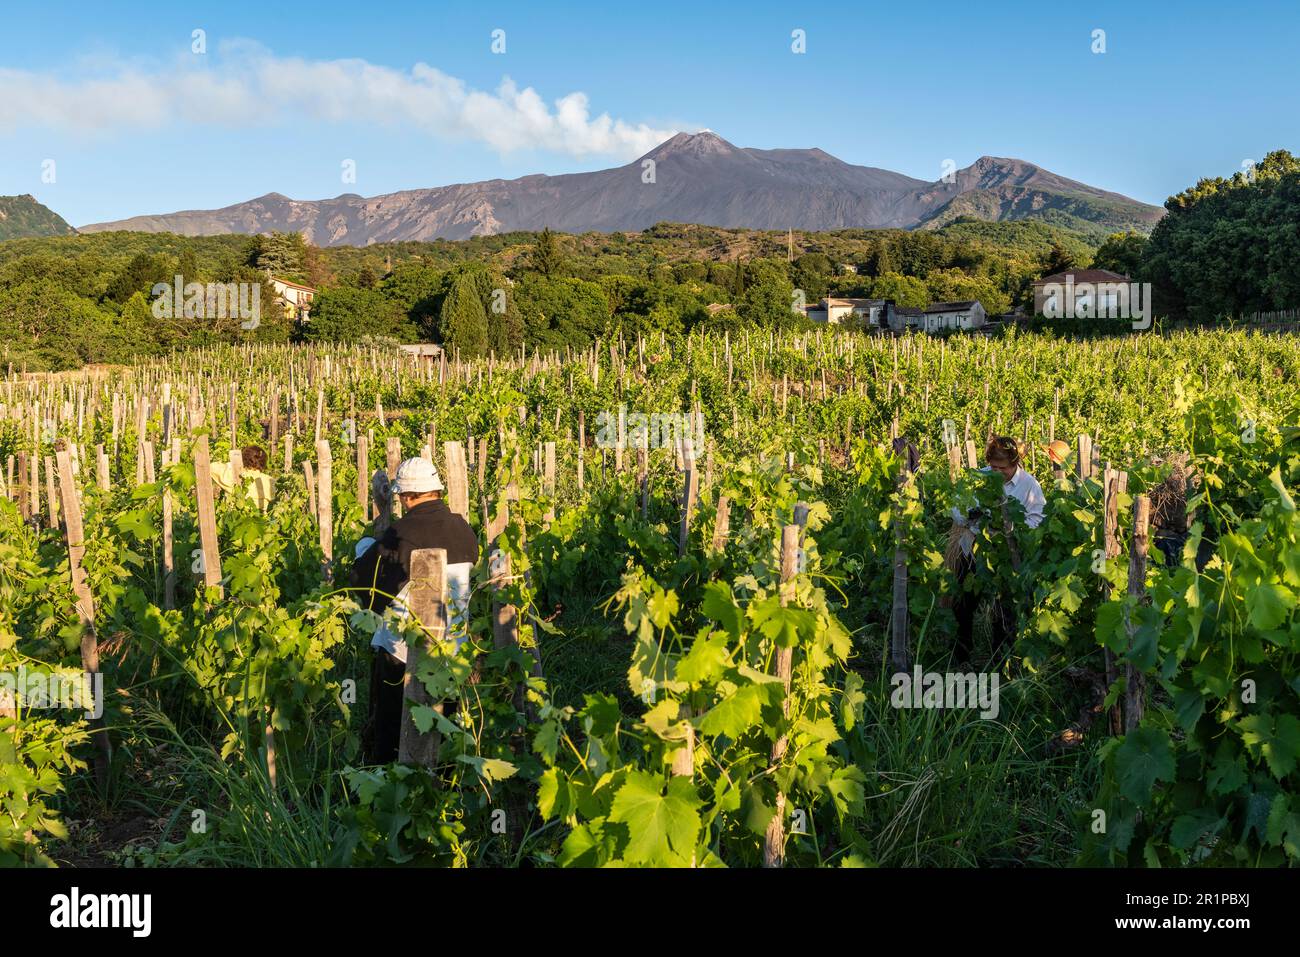 Estate potare le vigne in un vigneto nel villaggio di Milo, sulle pendici dell'Etna, Sicilia, Italia Foto Stock